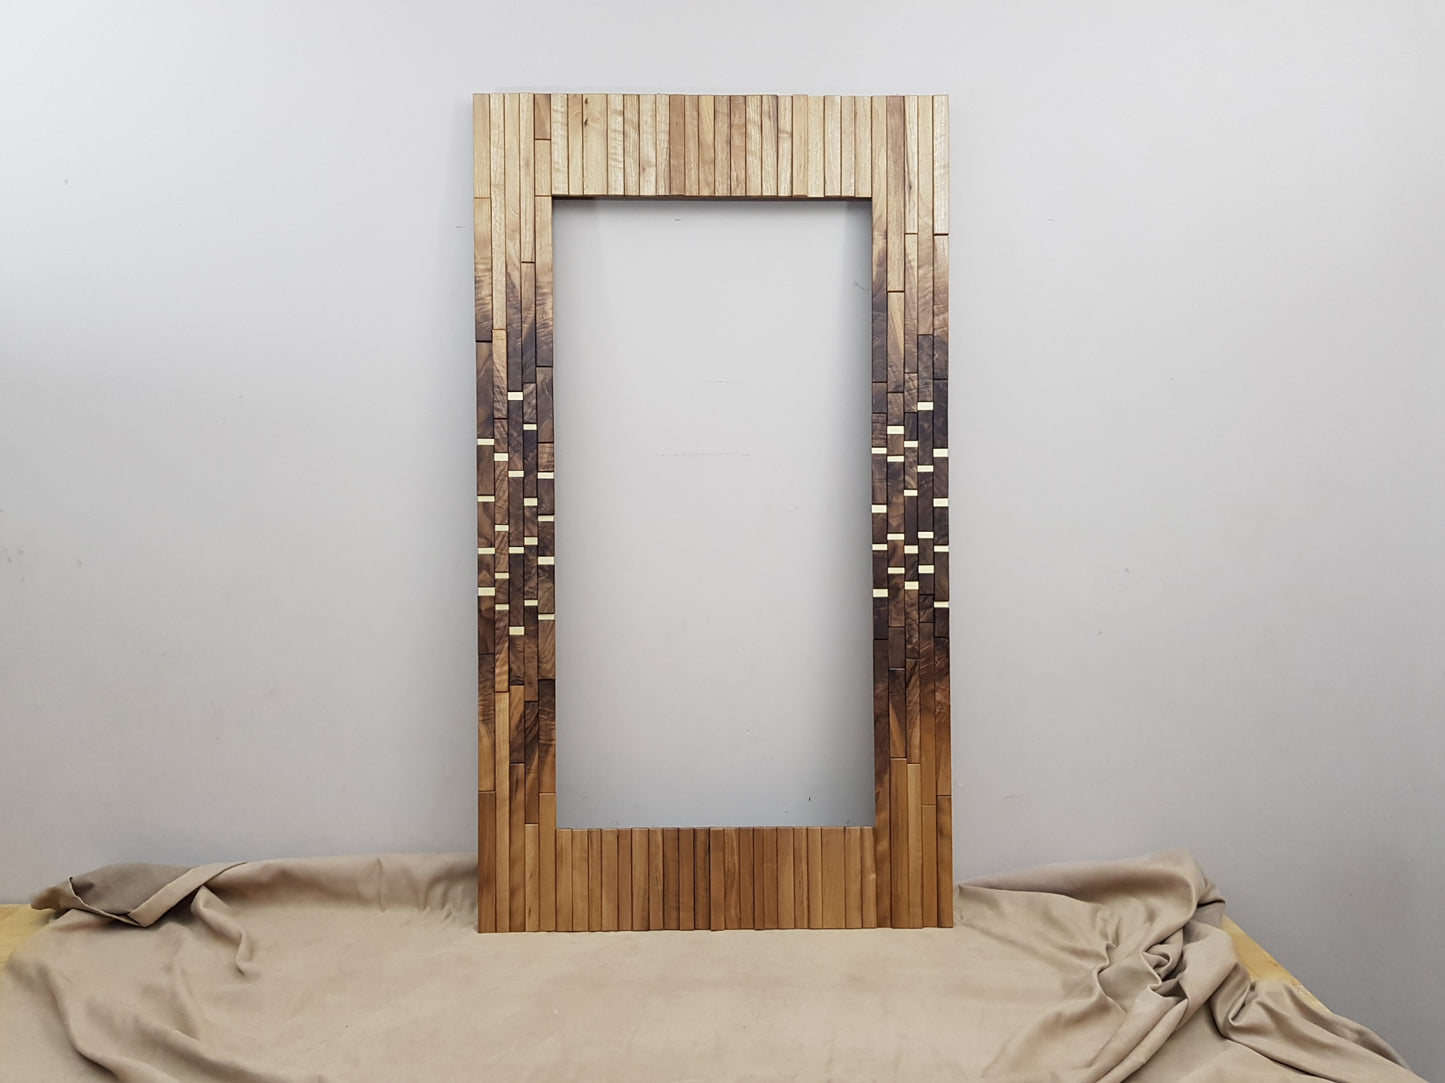 Modern centrepiece statement mirror frame in figured walnut and brass